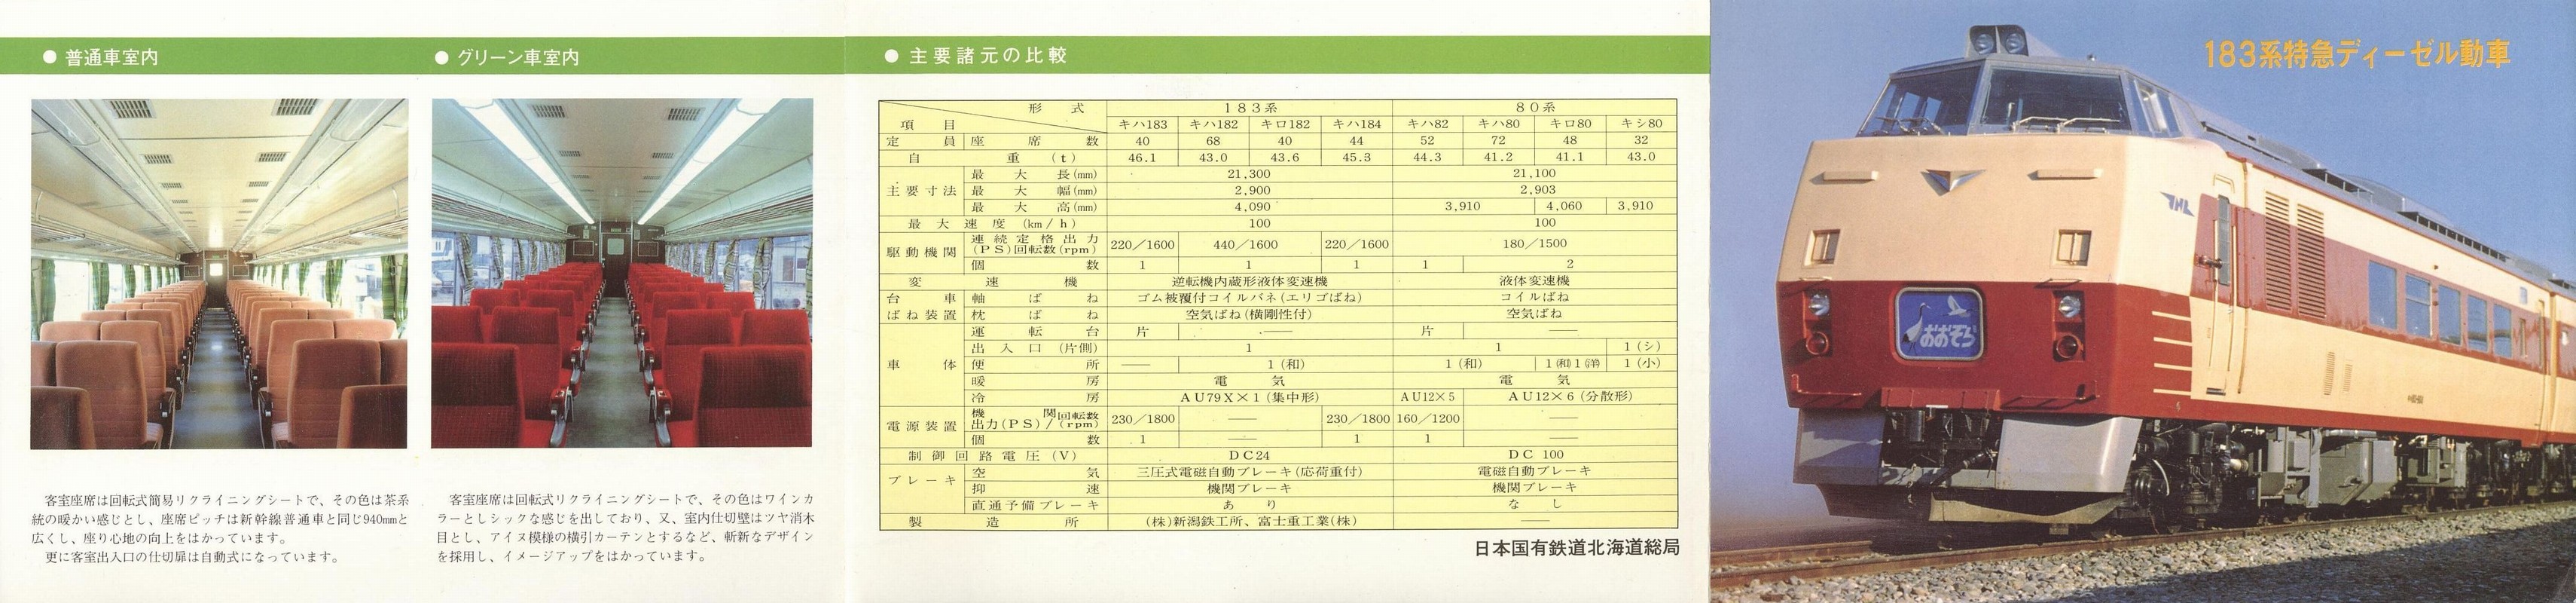 1980年入手_国鉄北海道総局_「183系特急ディーゼル動車」表面